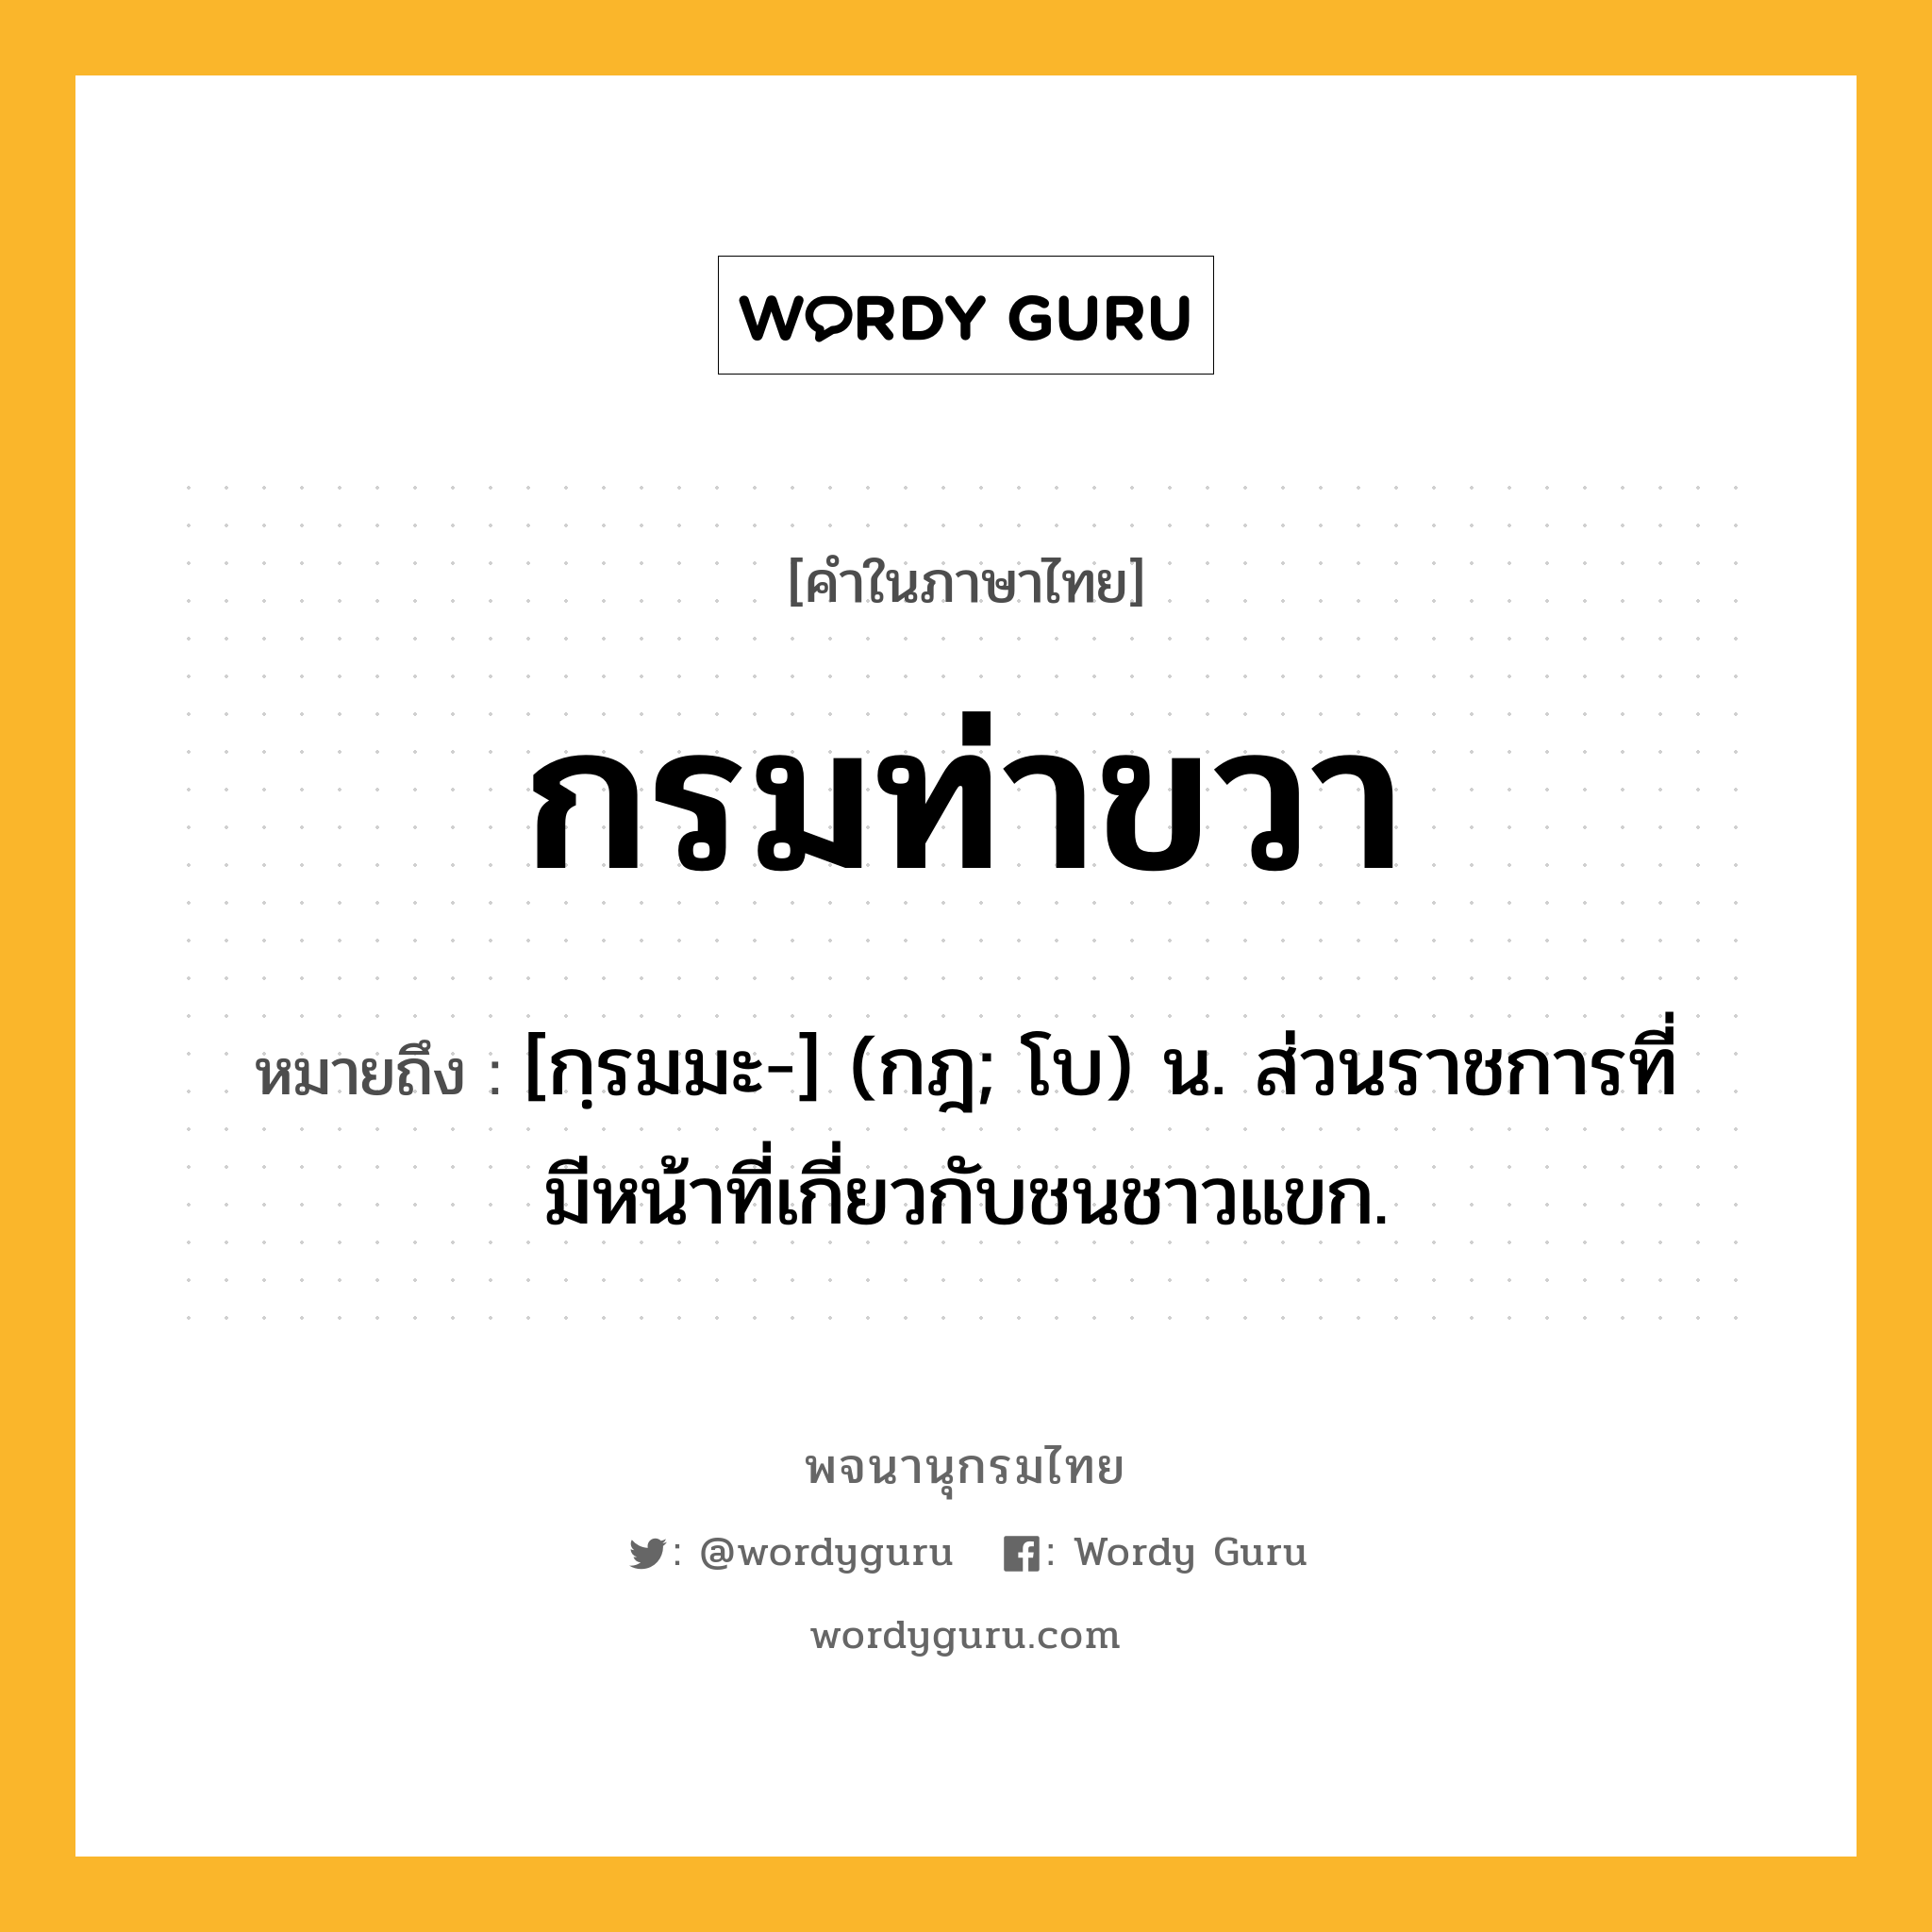 กรมท่าขวา ความหมาย หมายถึงอะไร?, คำในภาษาไทย กรมท่าขวา หมายถึง [กฺรมมะ-] (กฎ; โบ) น. ส่วนราชการที่มีหน้าที่เกี่ยวกับชนชาวแขก.